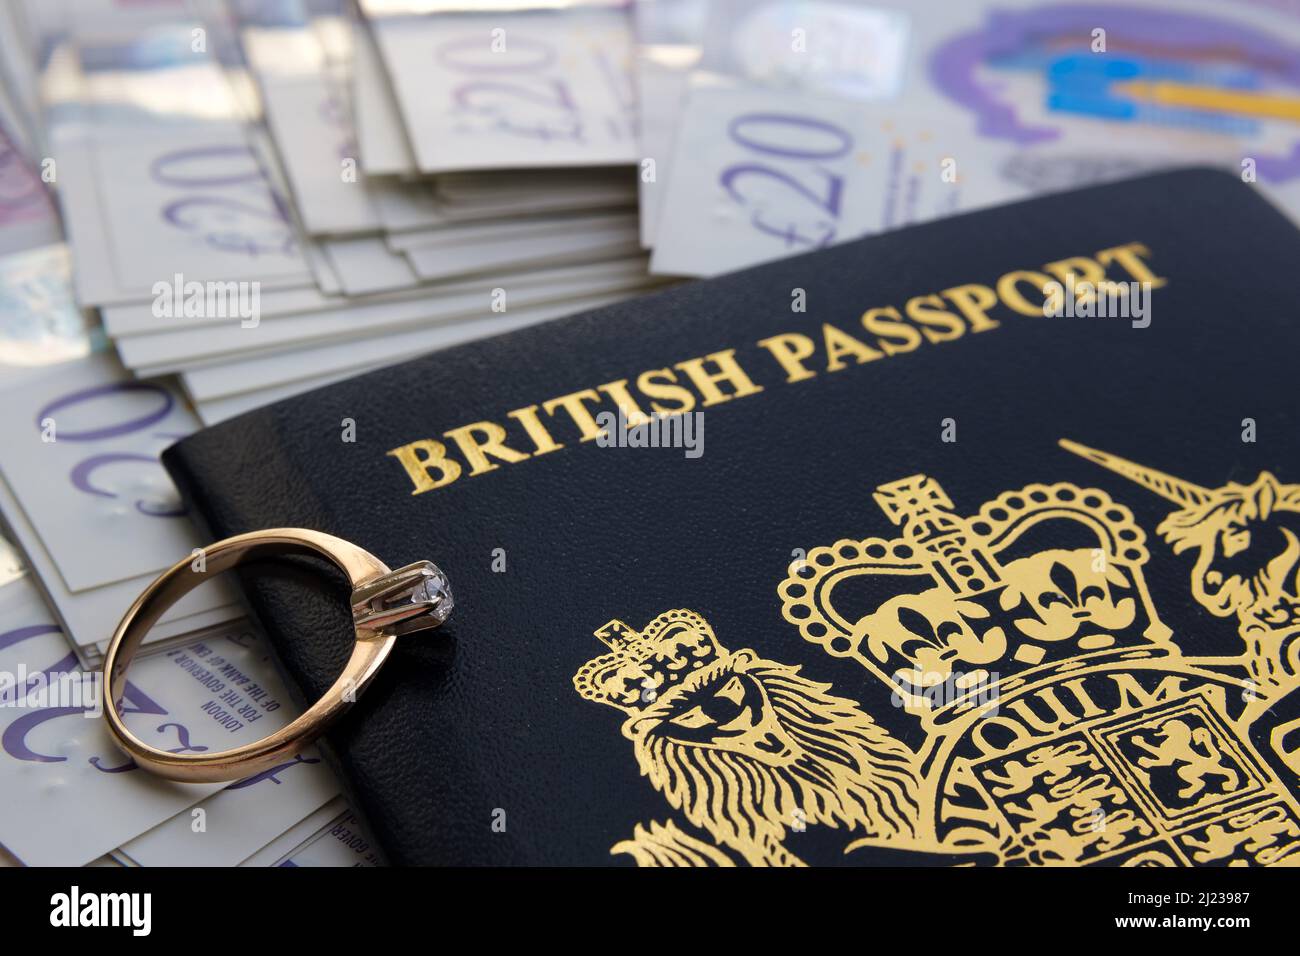 Verlobungsring mit Diamant auf einem neuen dunkelblauen britischen Pass. Konzept für das britische Verlobungsvisum oder das Ehepartnervisum. Stafford, Großbritannien, März 29 Stockfoto